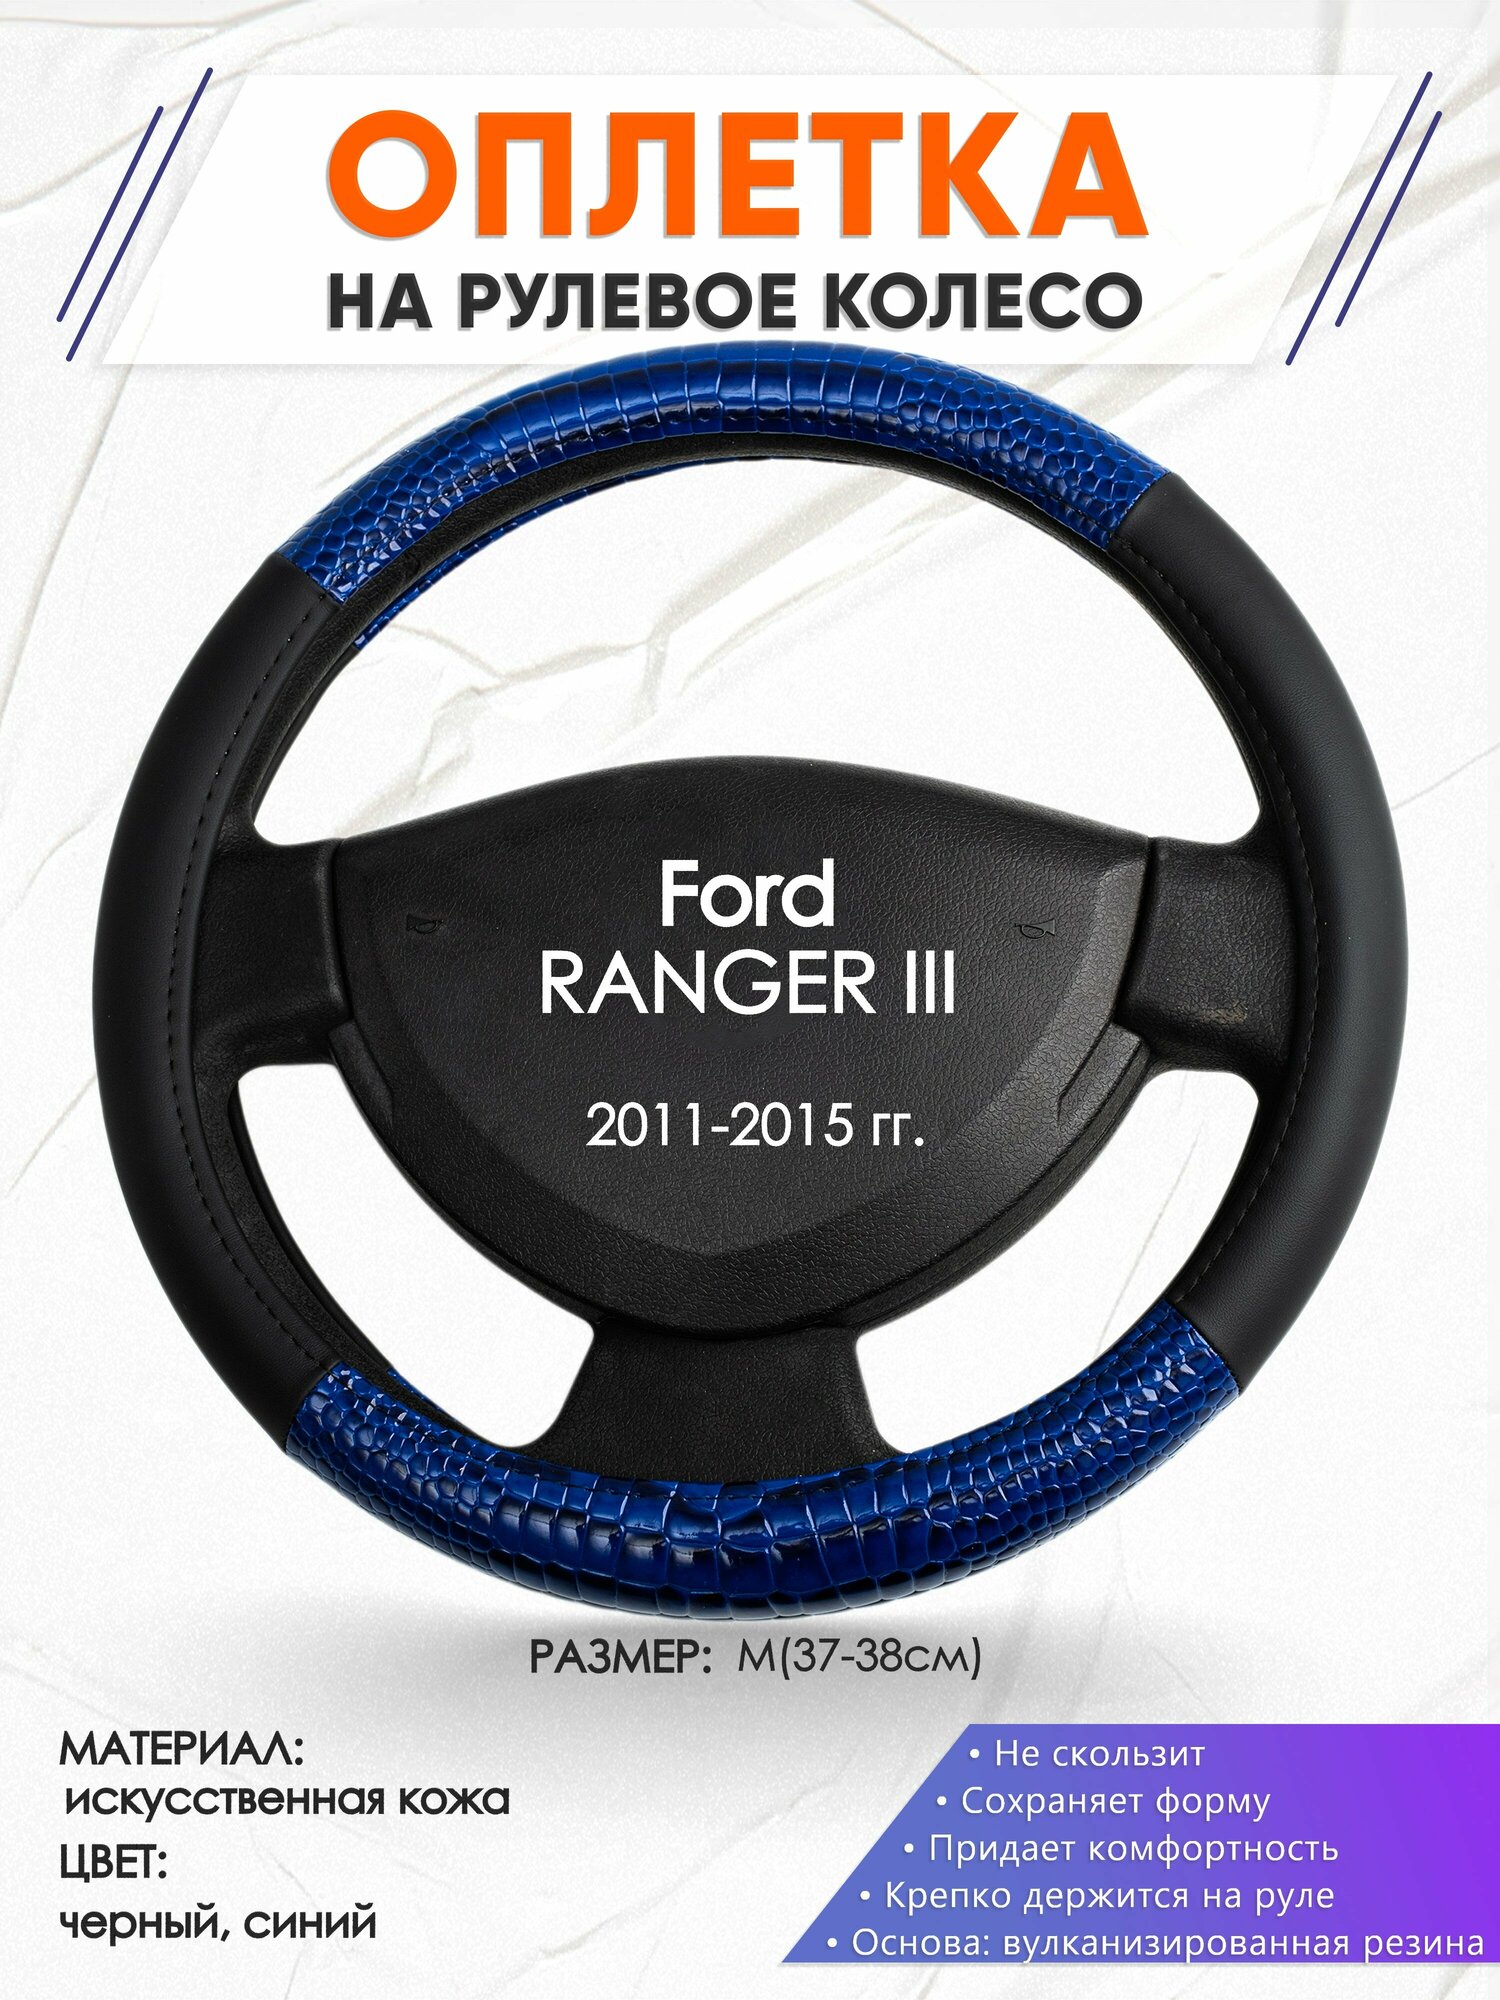 Оплетка наруль для Ford RANGER III(Форд Рангер) 2011-2015 годов выпуска, размер M(37-38см), Искусственная кожа 82